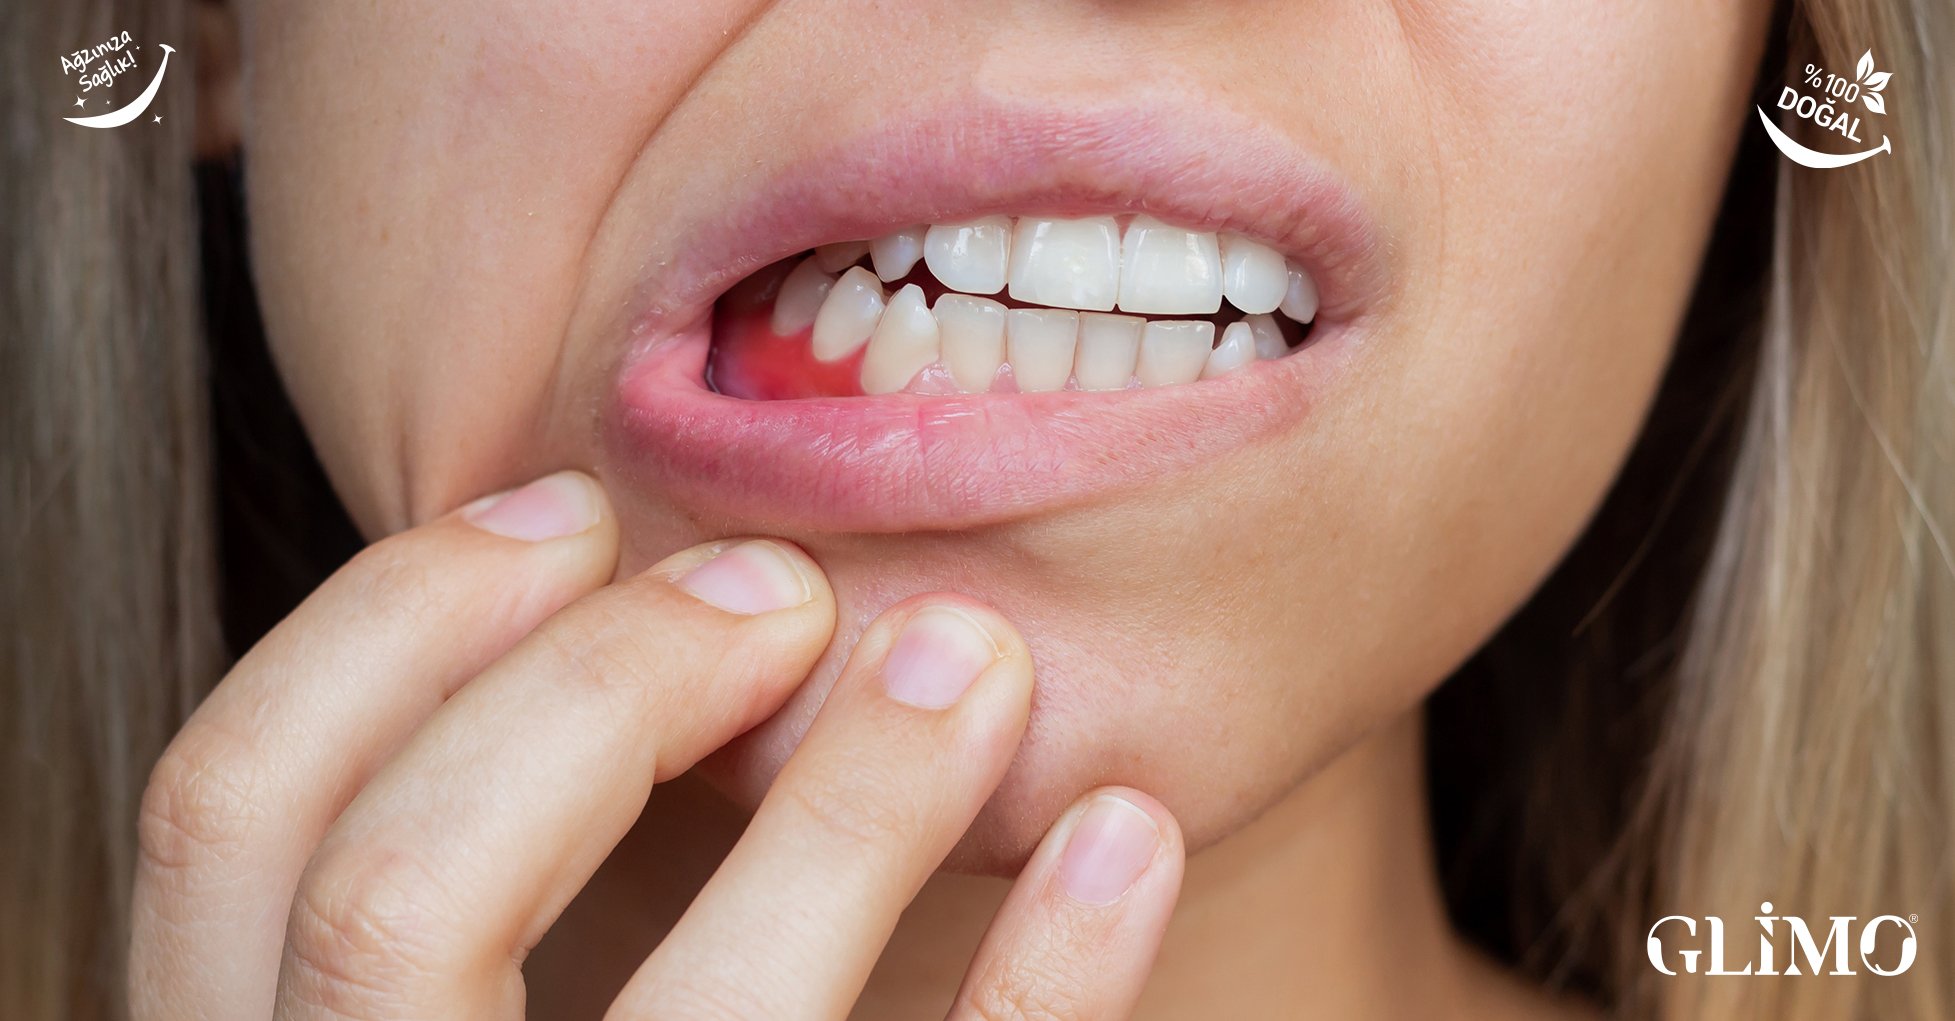 Diş Eti Kanaması: Sinyalleri Okuyun ve Glimo Beta ile Önlem Alın